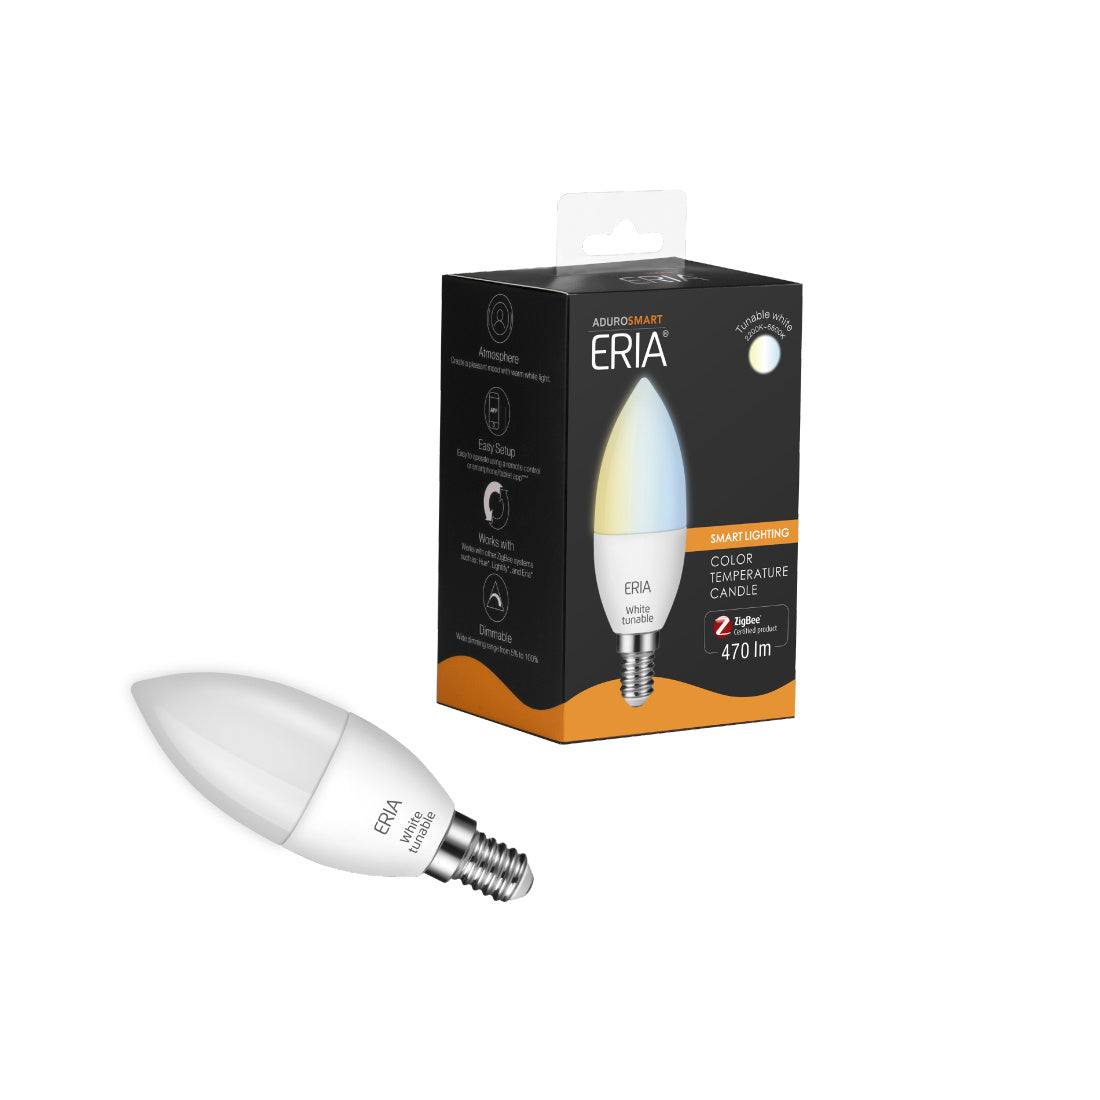 AduroSmart Smart Zigbee Lighting Tunable White